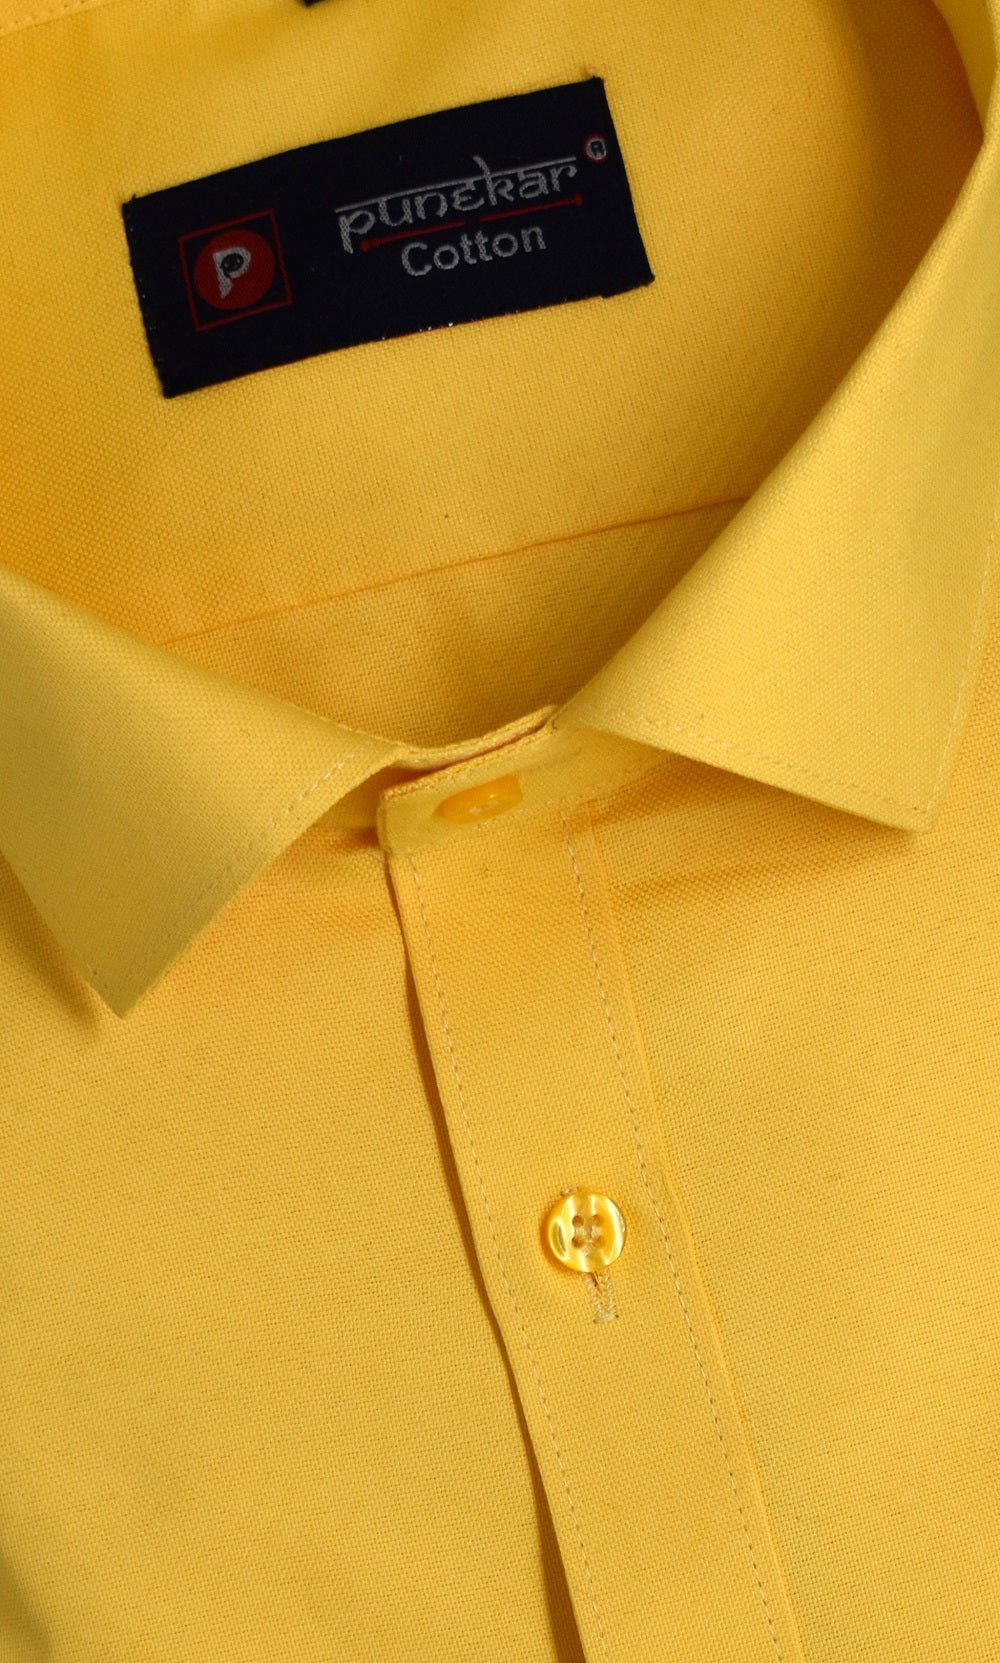 Punekar Cotton yellow Color Rich Cotton Formal Shirt For Men&